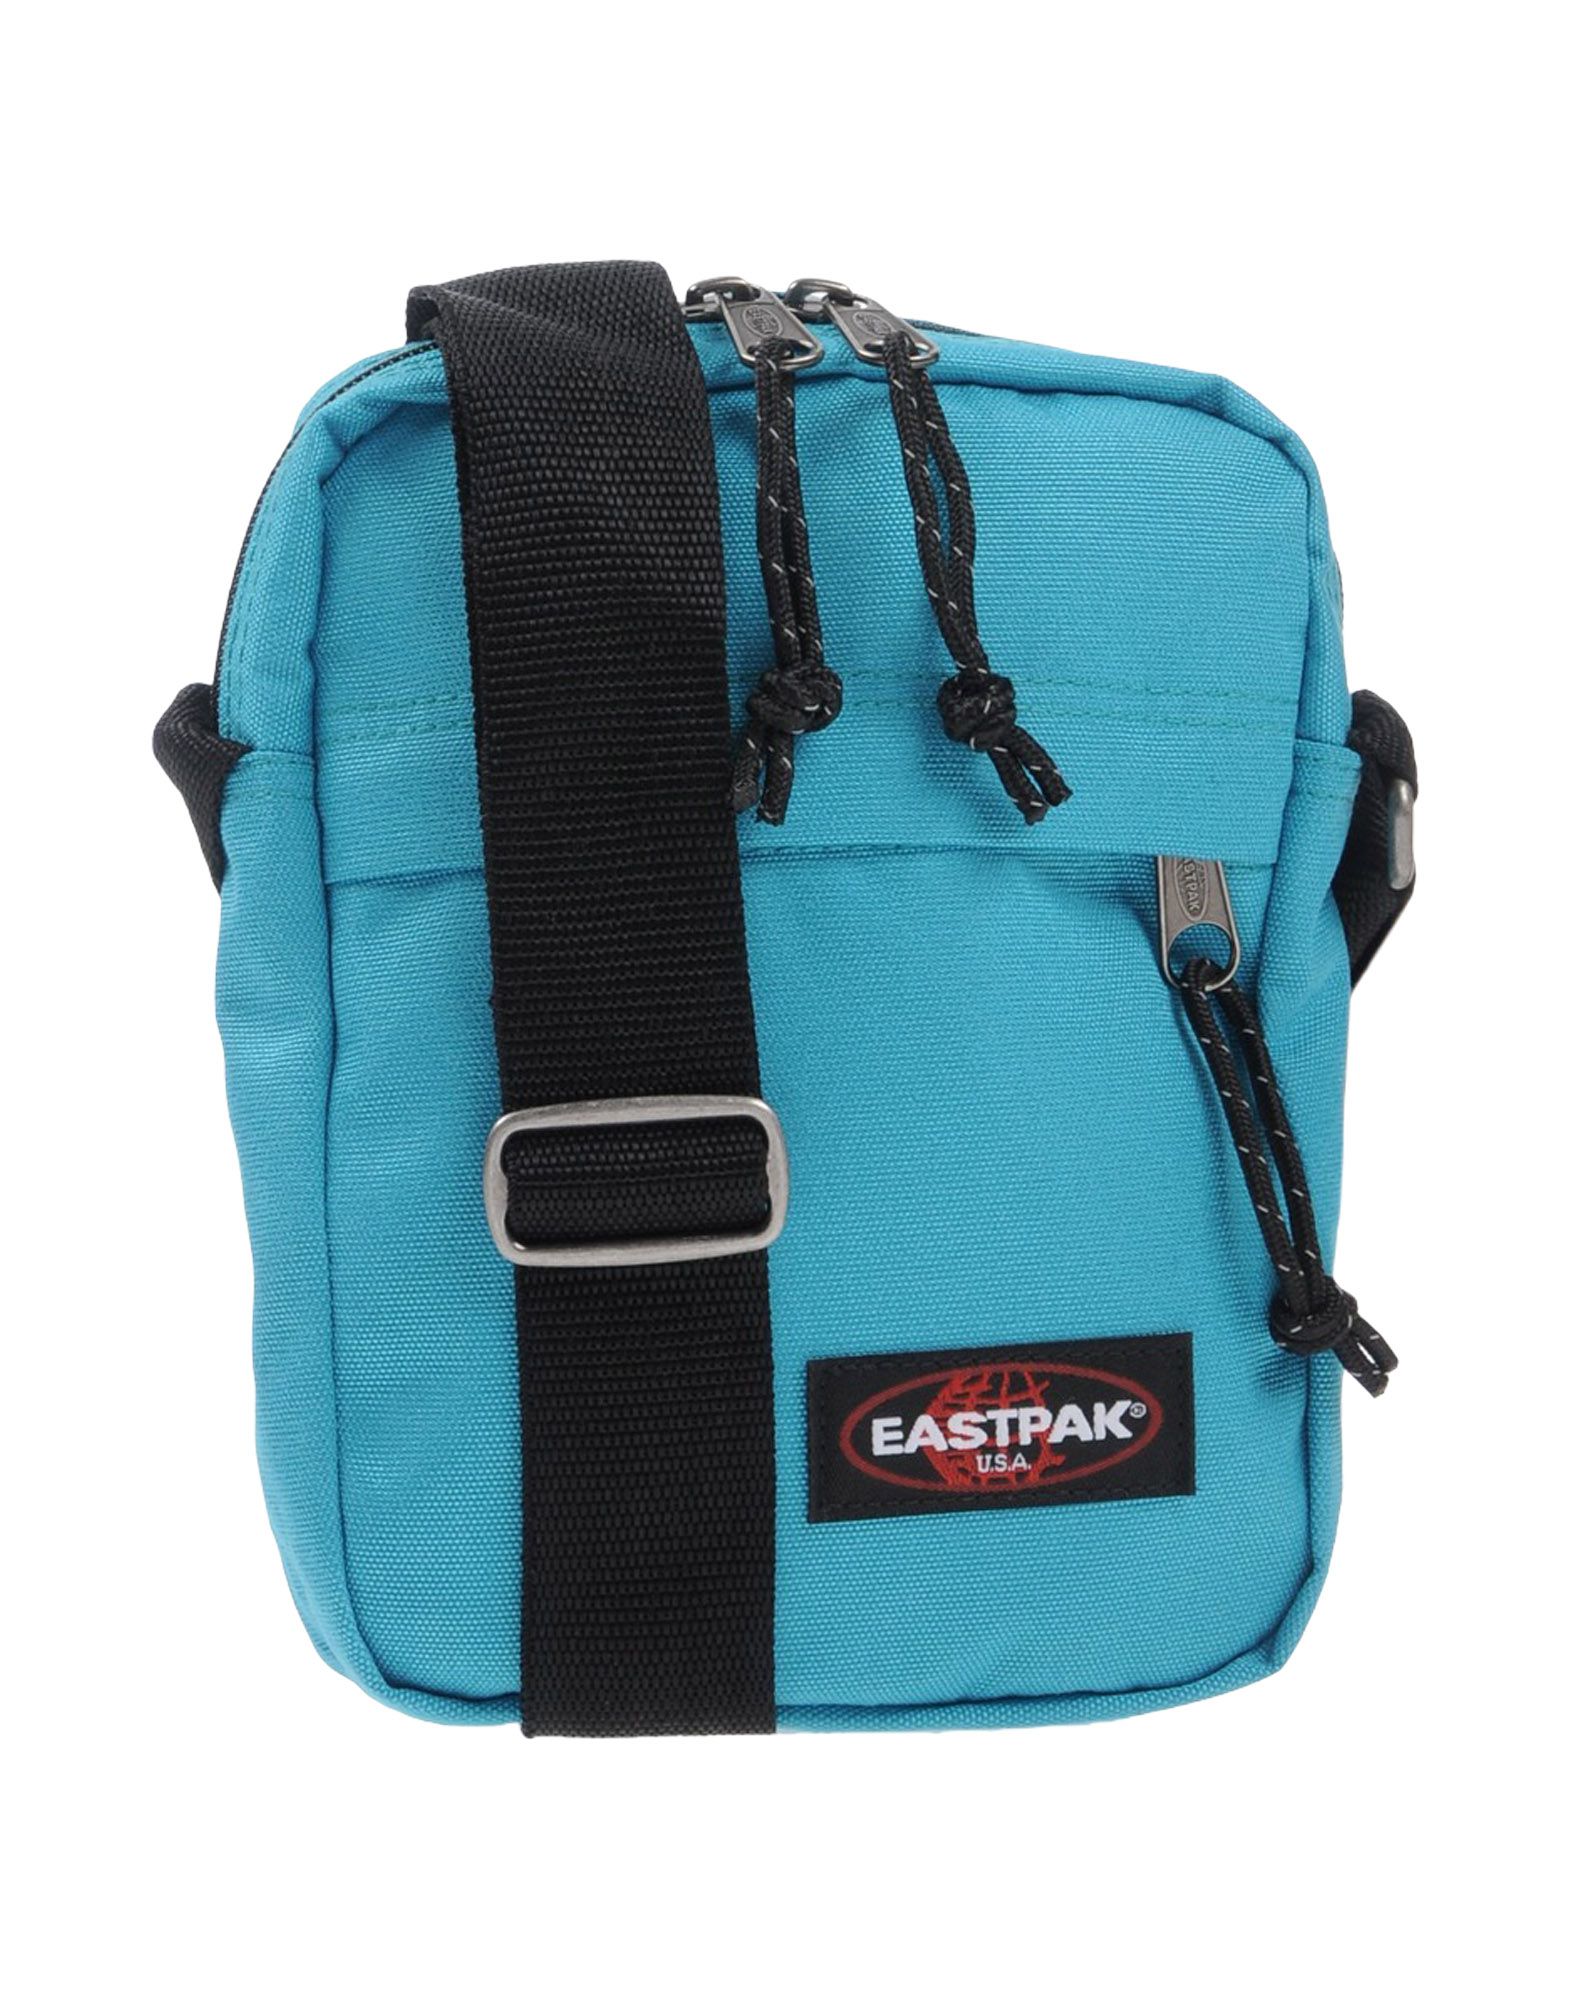 《送料無料》EASTPAK メンズ メッセンジャーバッグ ターコイズブルー 紡績繊維